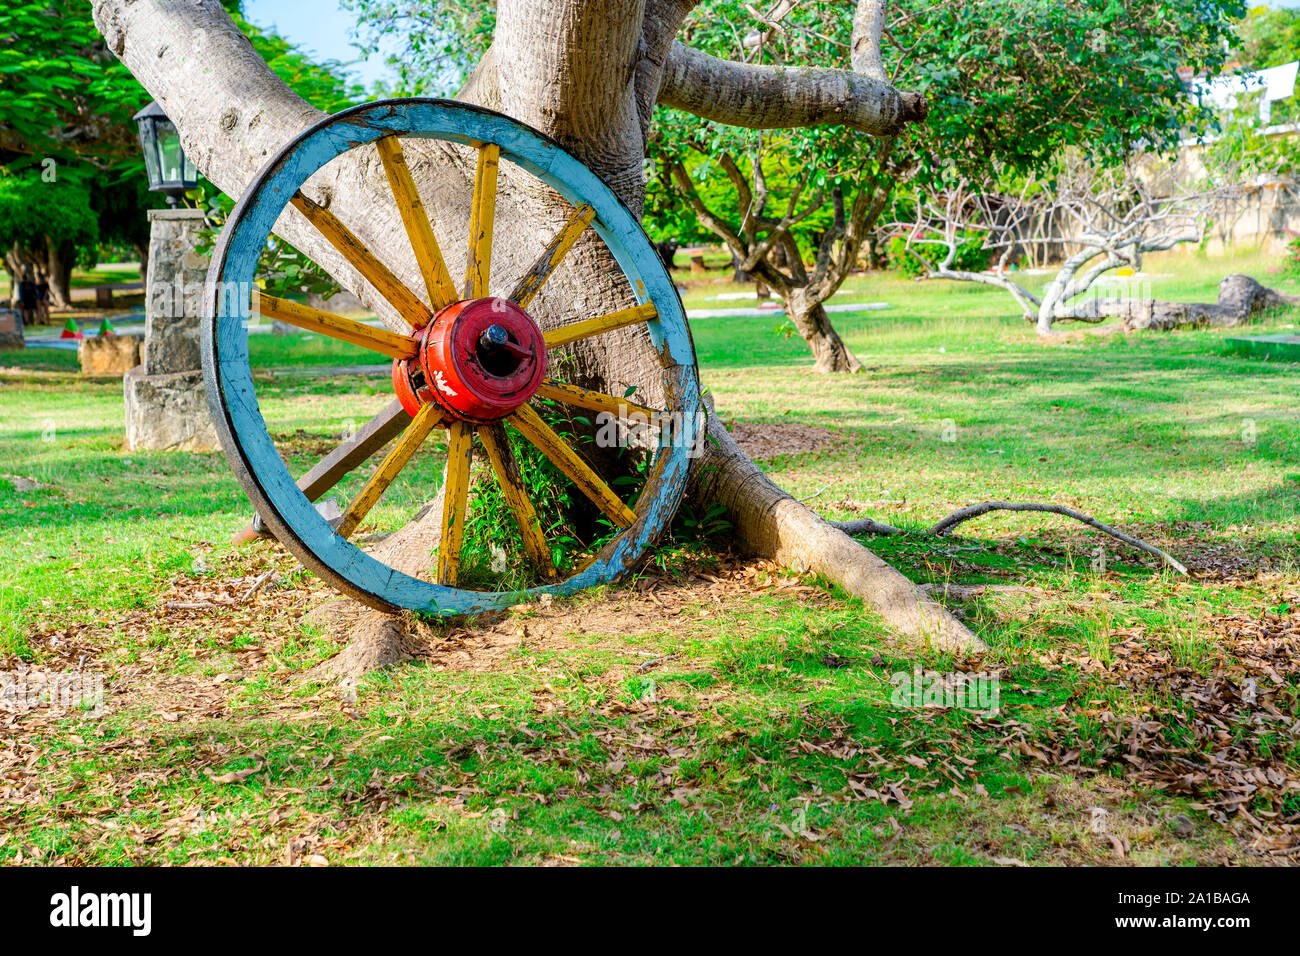 Wooden Wheel Near a Tree in Josone Park, Varadero Cuba. Stock Photo